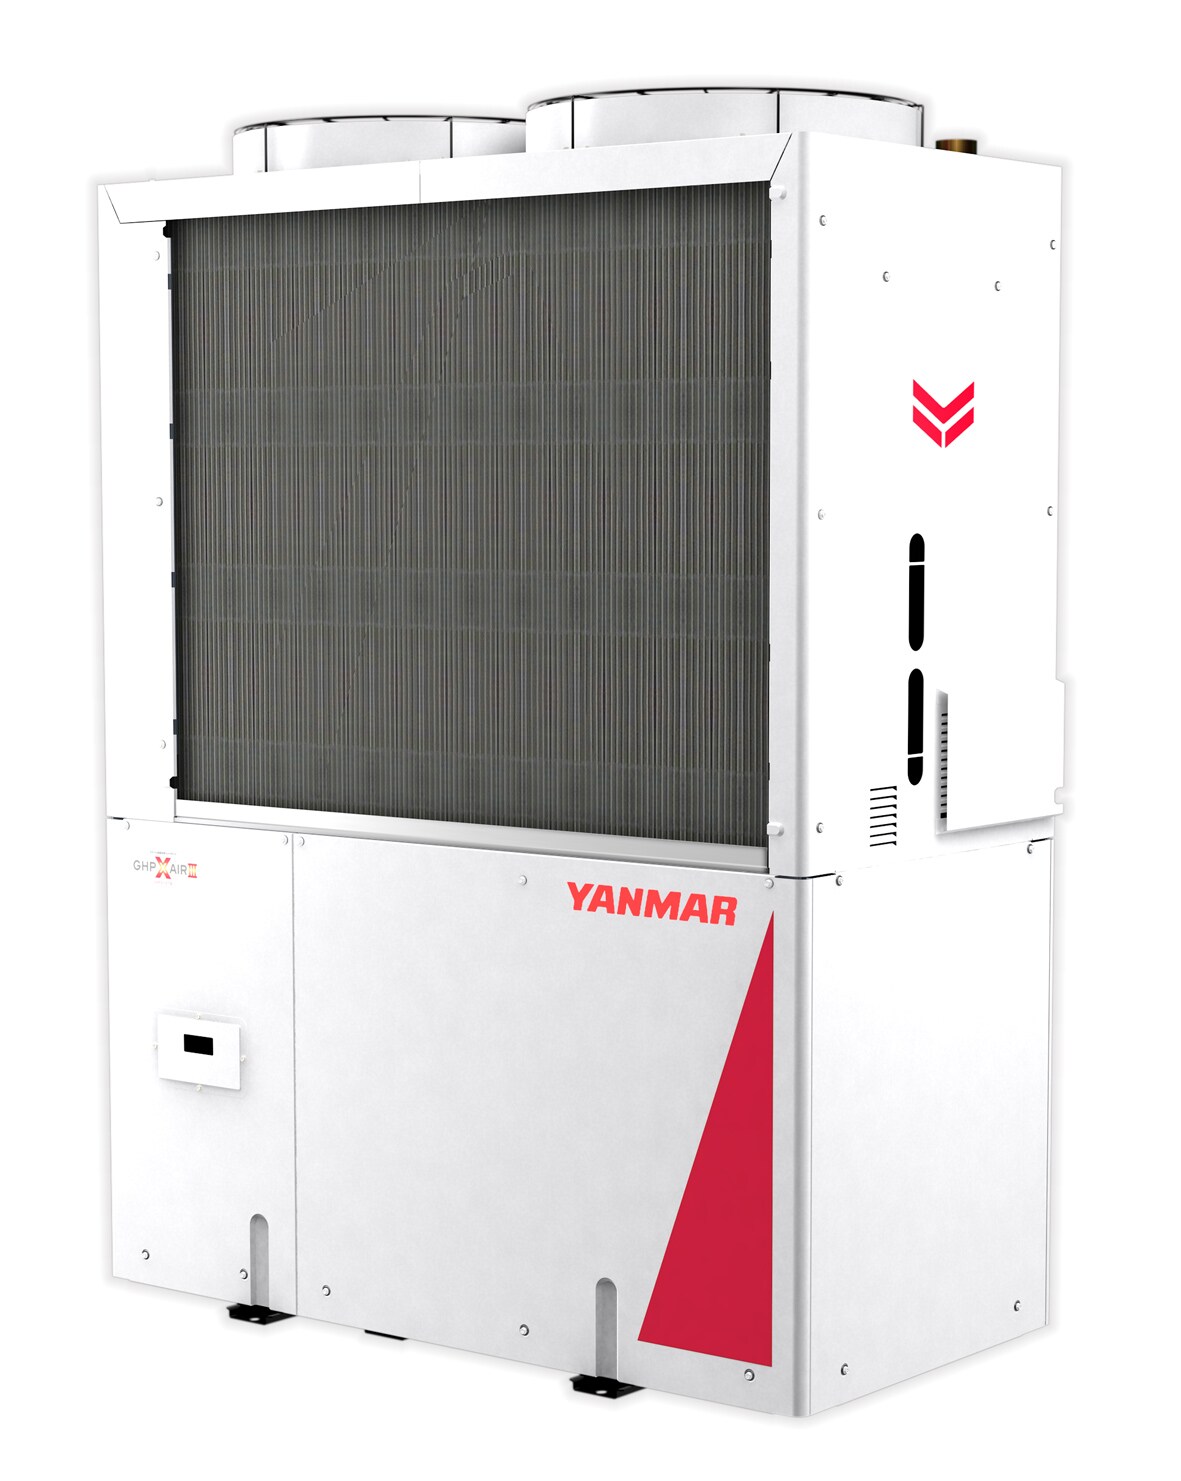 省エネと節電を両立するガス冷暖房システムの最新モデル Ghp Xair エグゼア を開発 年 ニュース エネルギー ヤンマー